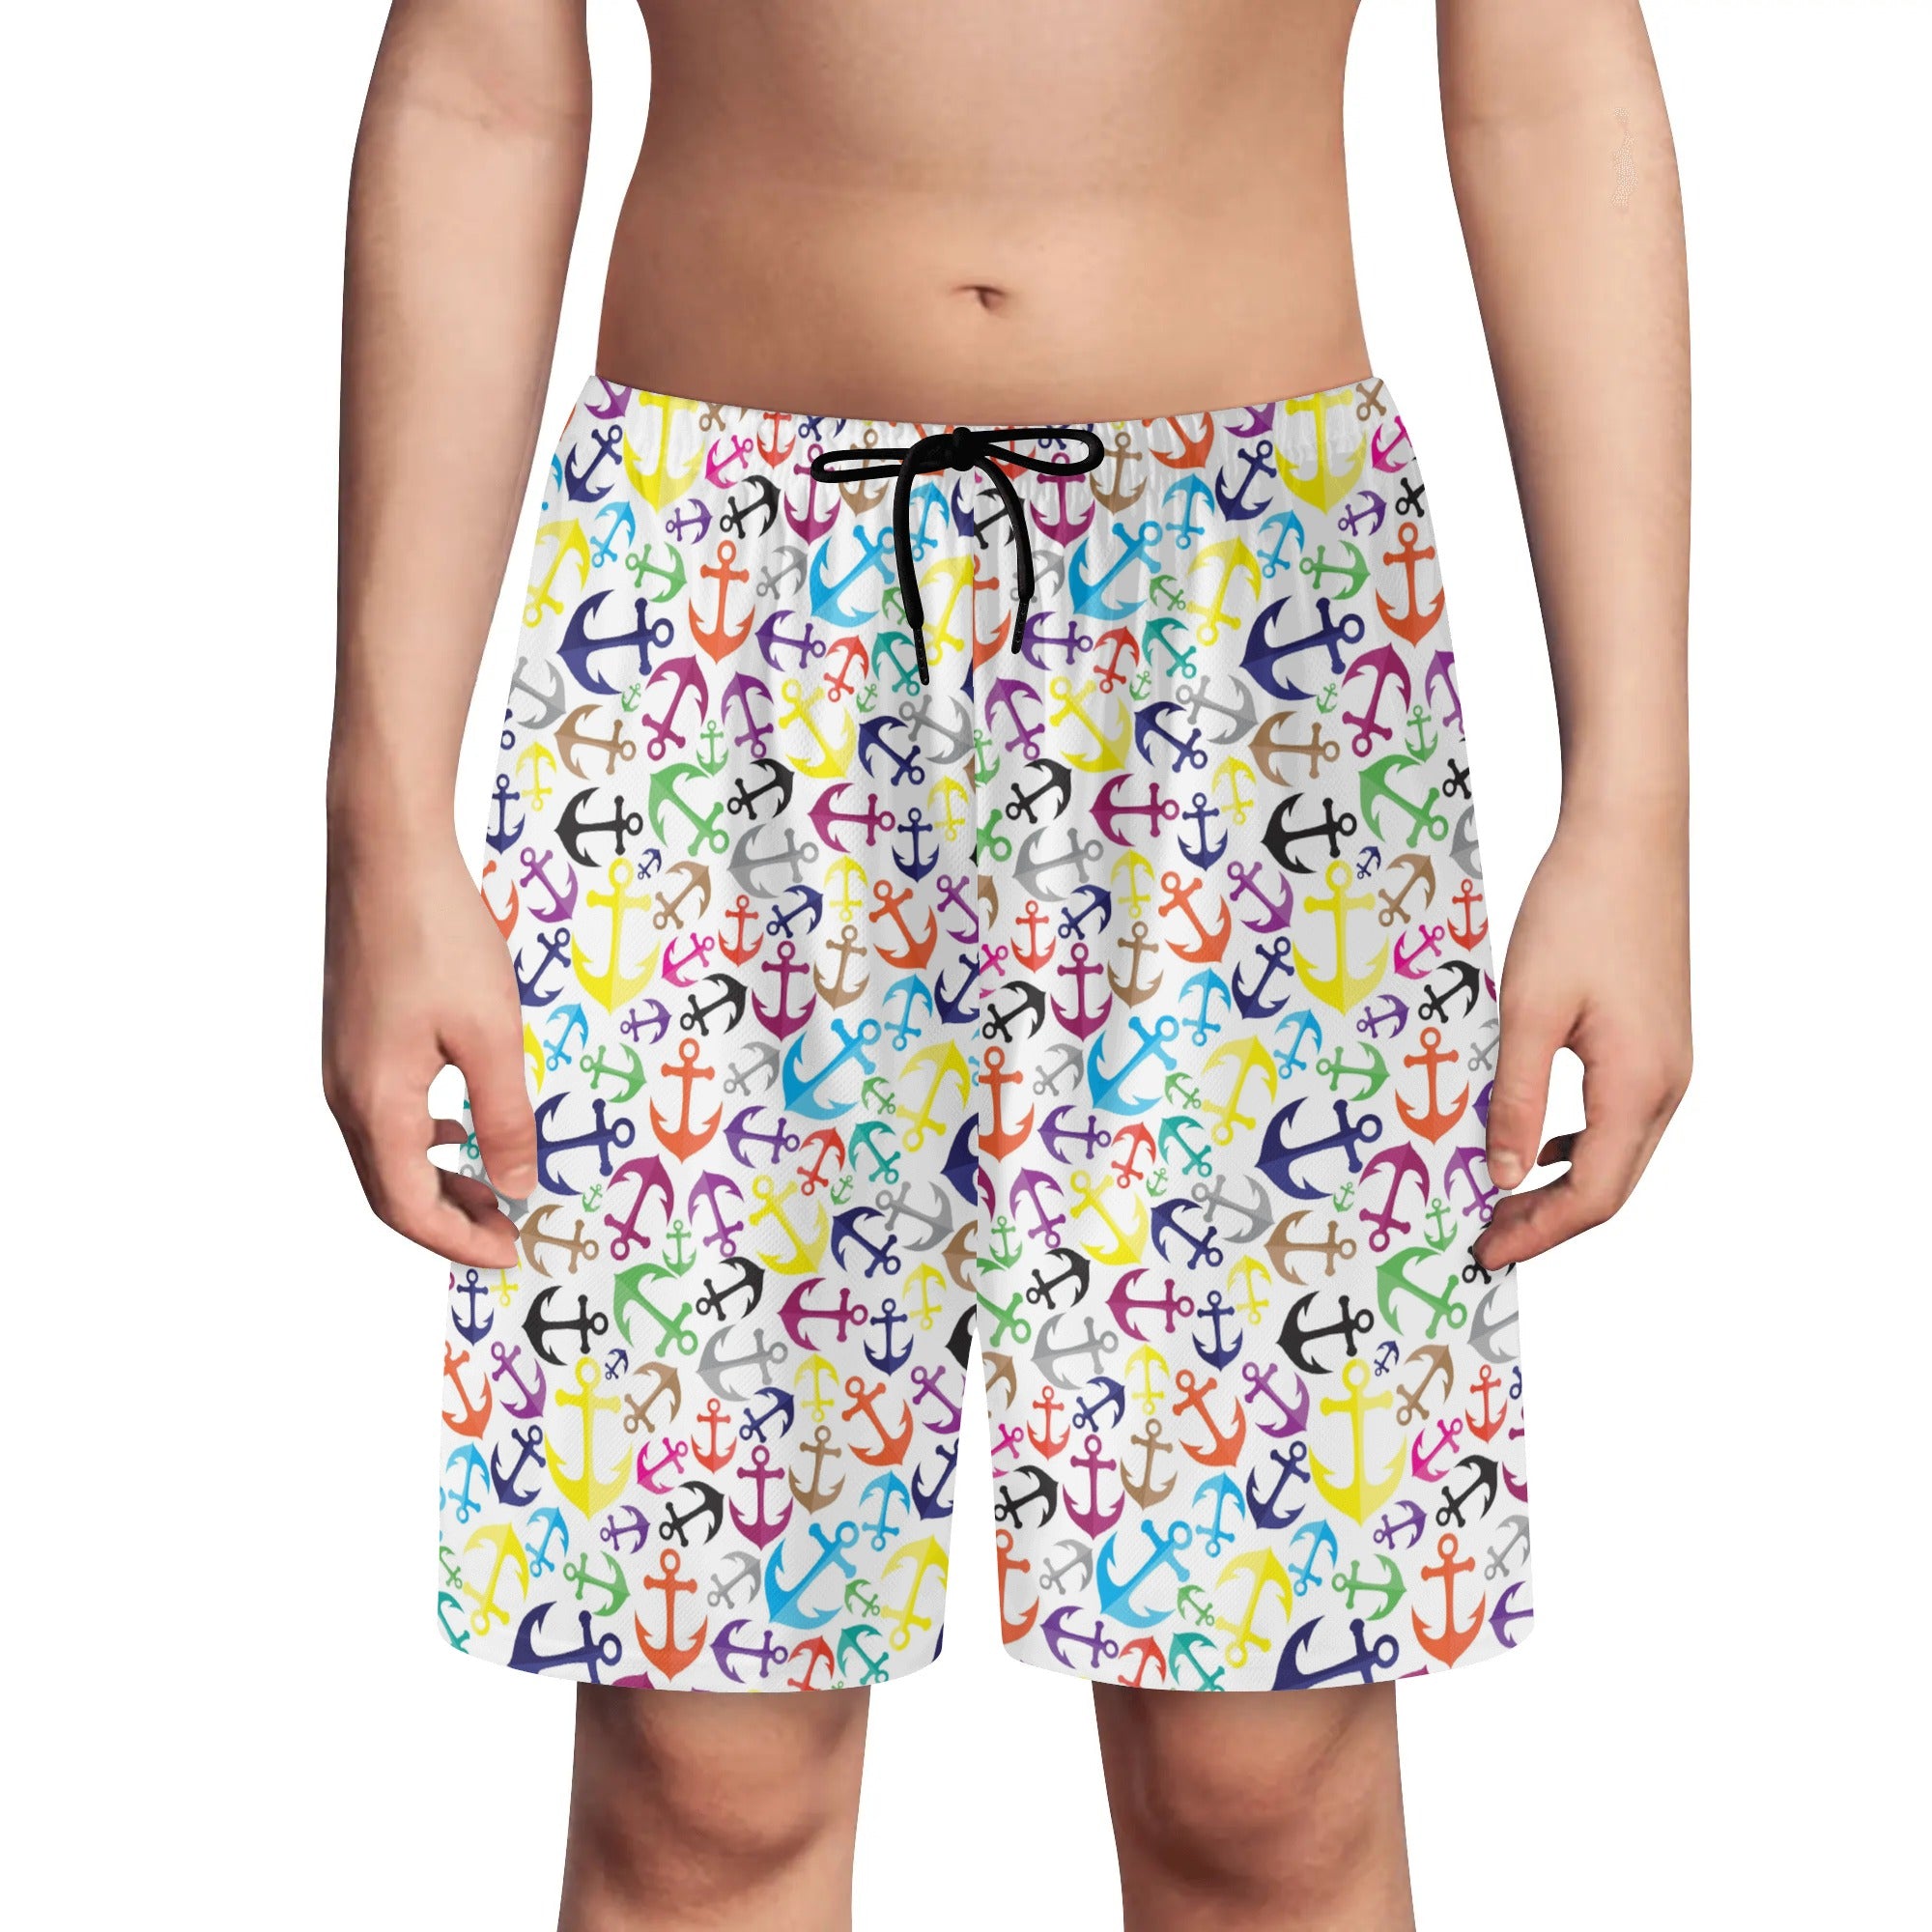 Pantalones cortos de playa ligeros para jóvenes: ¡Anclas lejos!